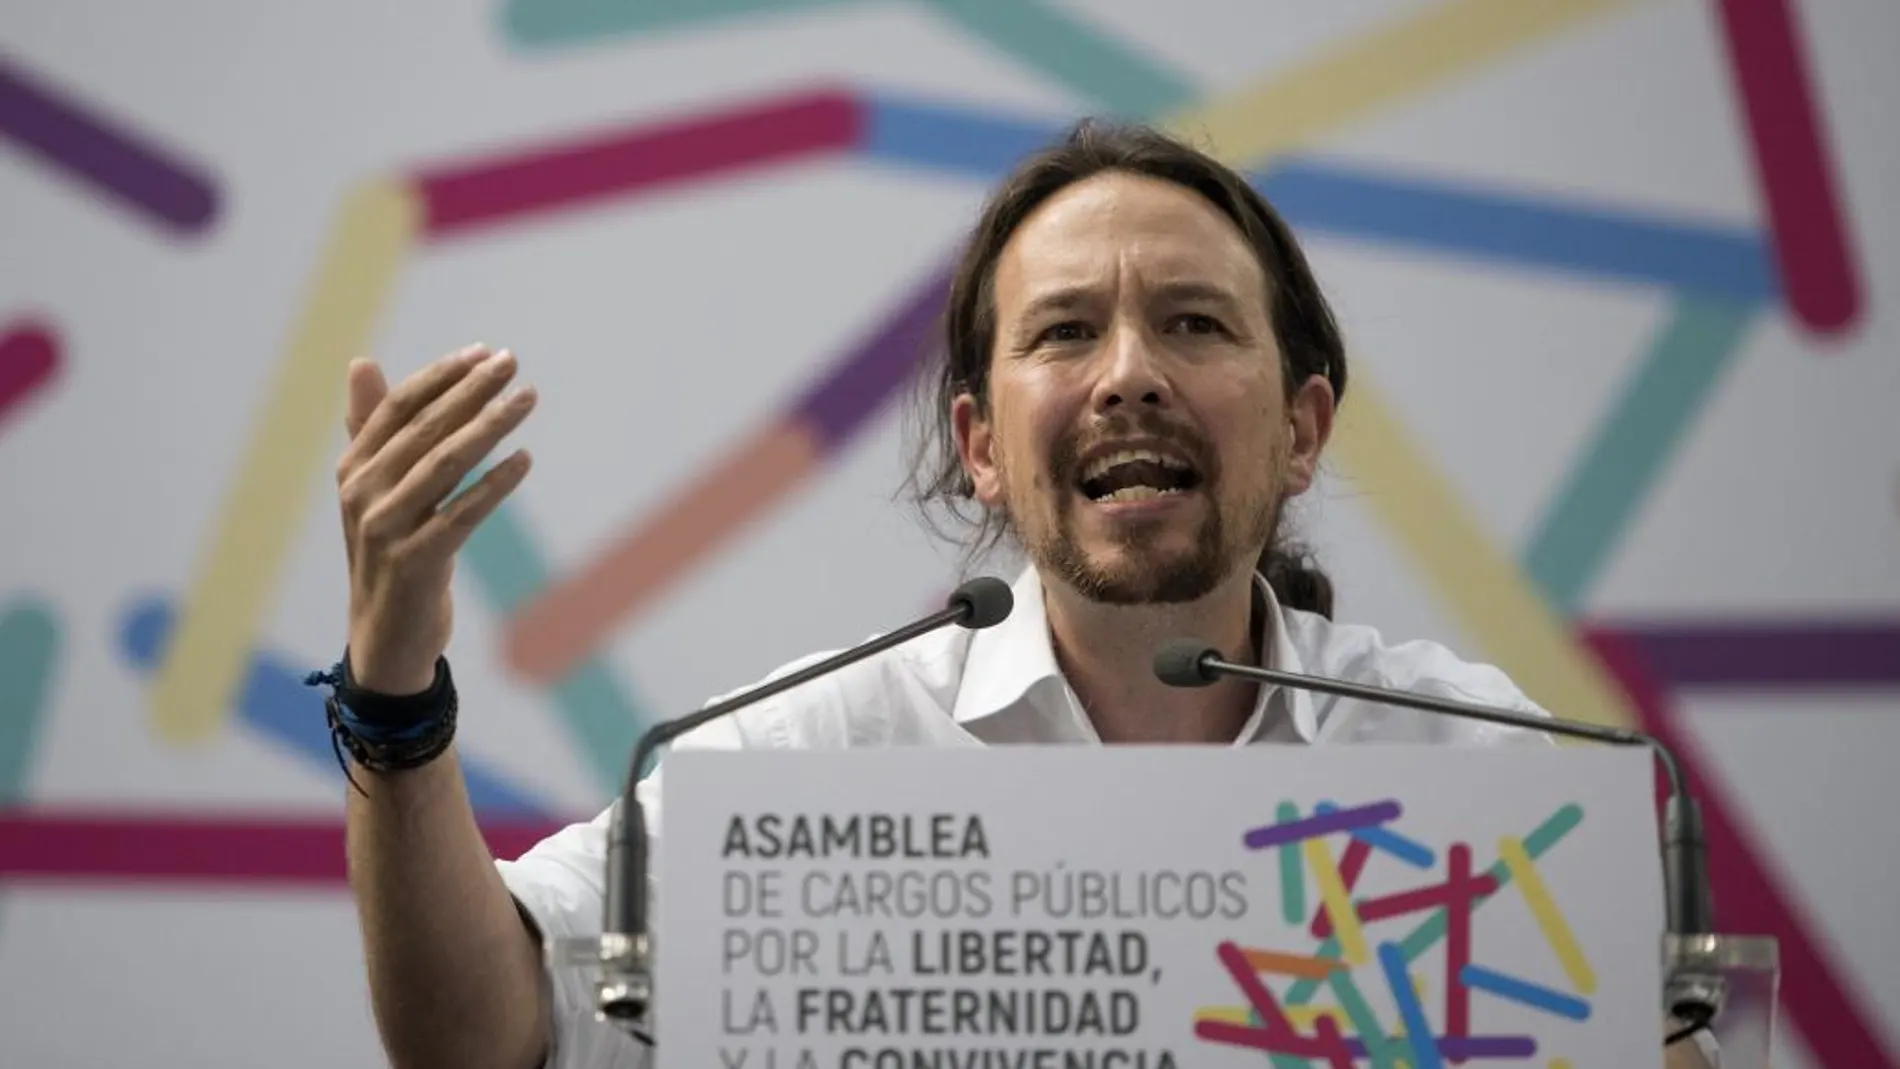 El líder de Unidos Podemos, Pablo Iglesias, durante la celebración Zaragoza de la asamblea extraordinaria de los cargos públicos